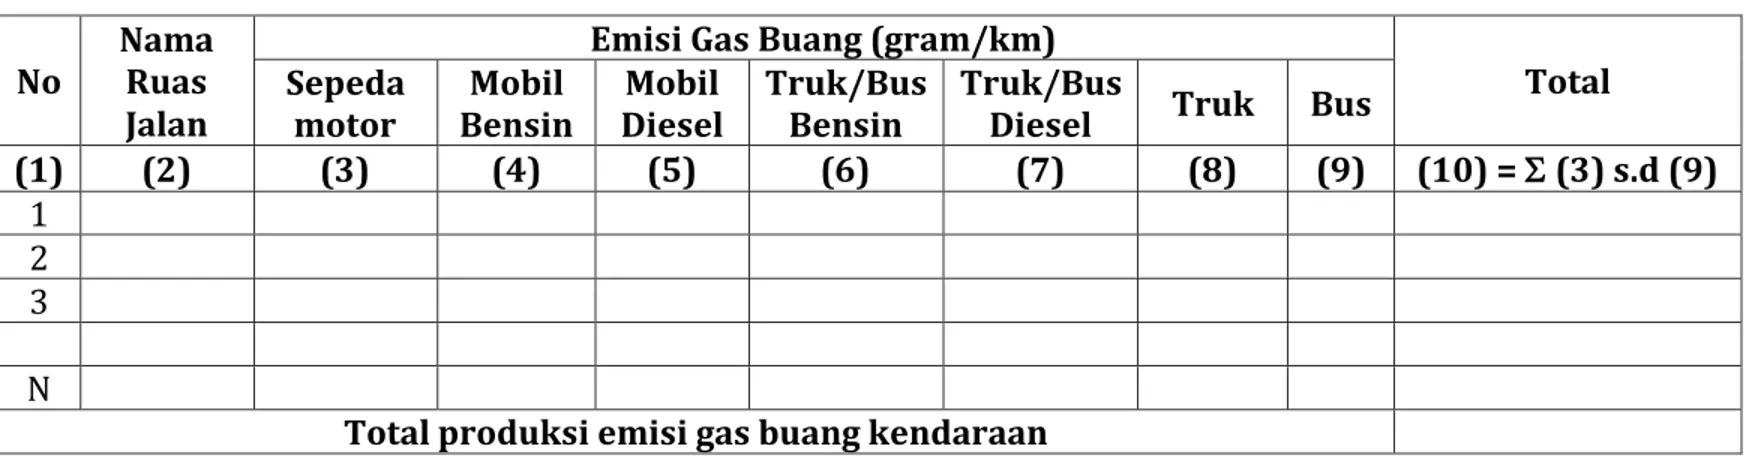 Tabel Faktor Emisi untuk Setiap Jenis Kendaraan (gram/km)  Tipe  